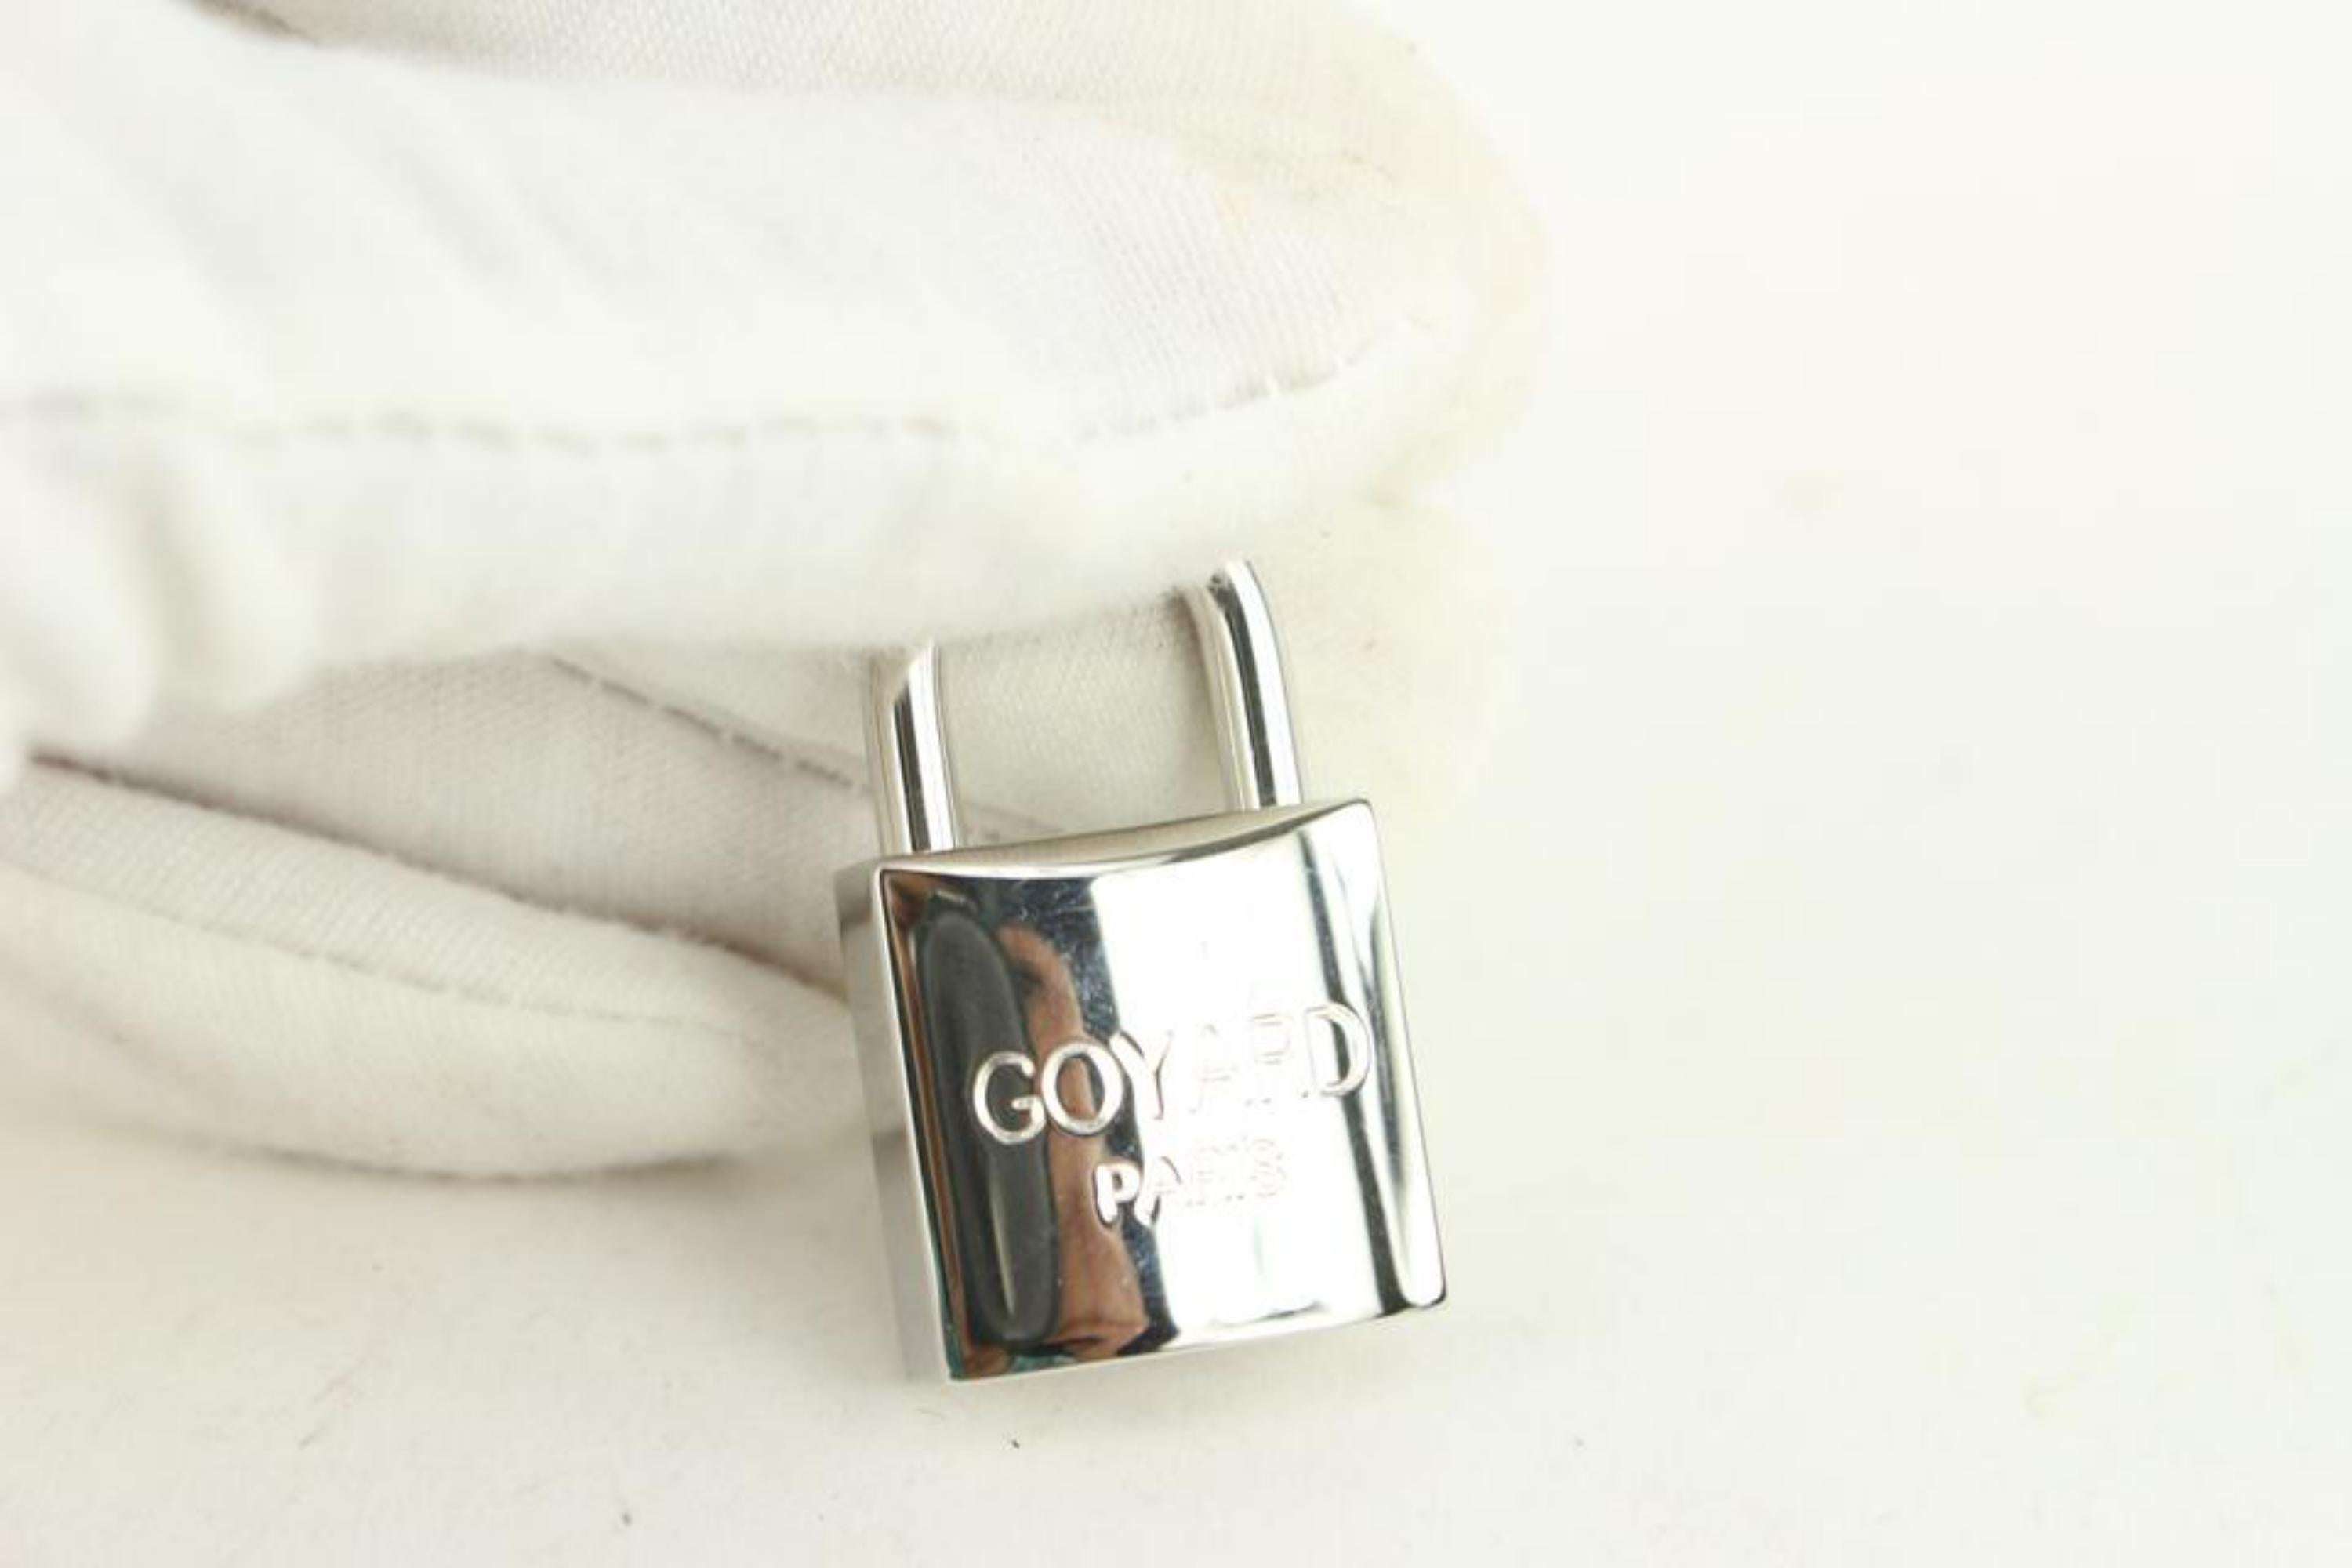 Goyard Silver Lock and Key Set Cadena Bag Charm 1012gy30 7